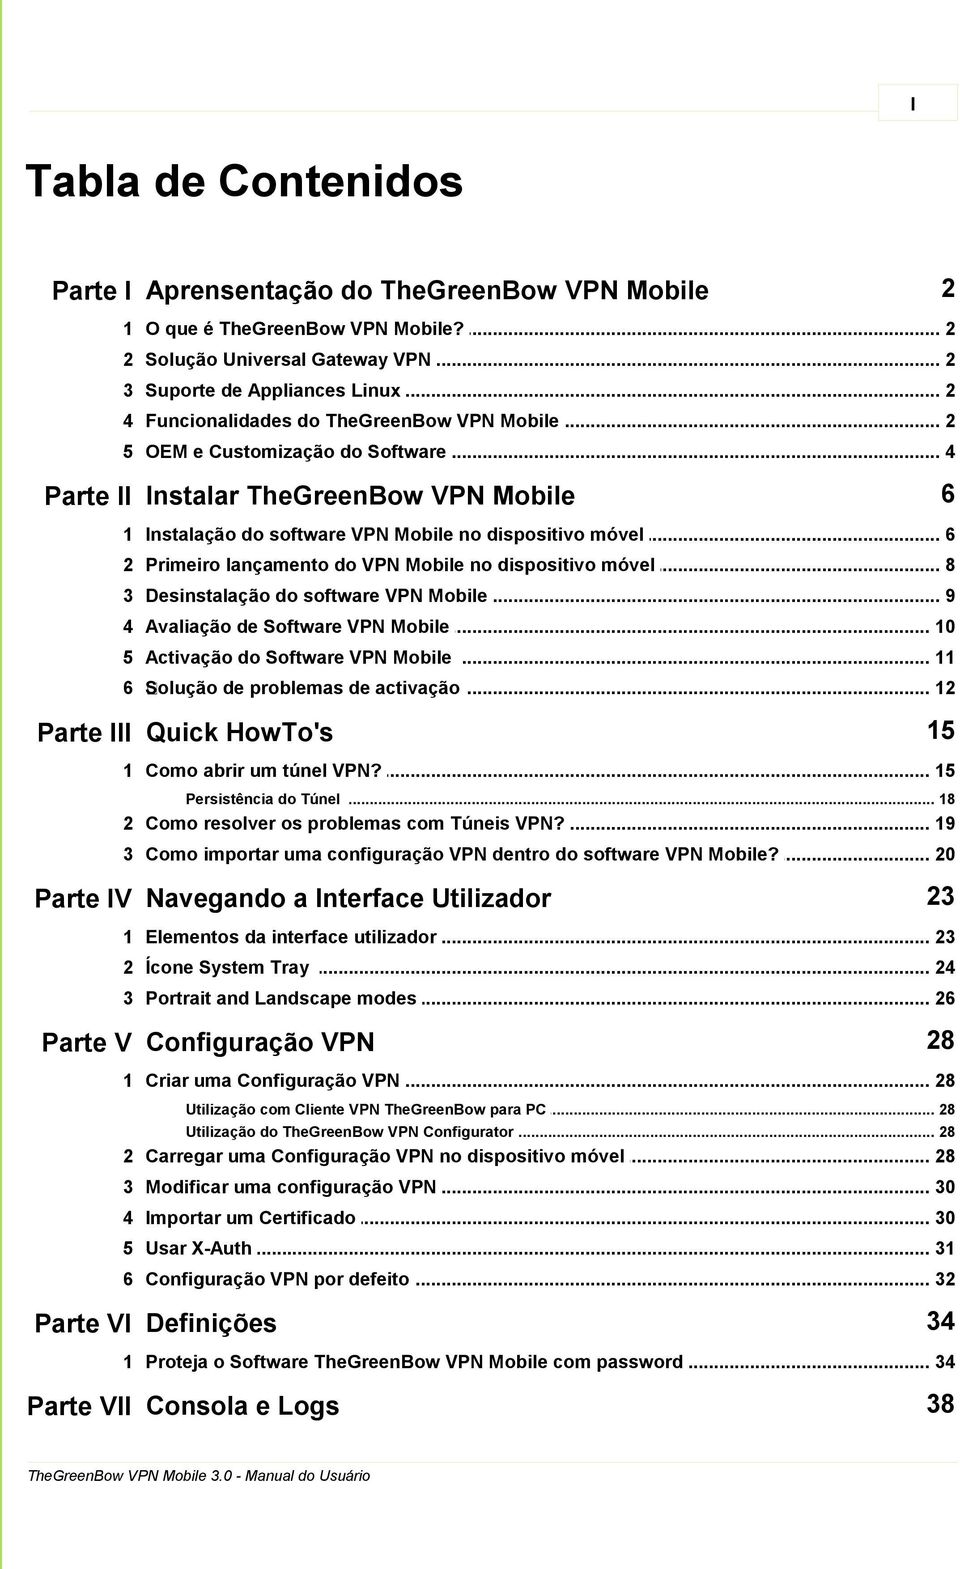 .. do VPN Mobile no dispositivo móvel 8 3 Desinstalação... do software VPN Mobile 9 4 Avaliação de... Software VPN Mobile 10 5 Activação do... Software VPN Mobile 11 6 Solução de problemas.